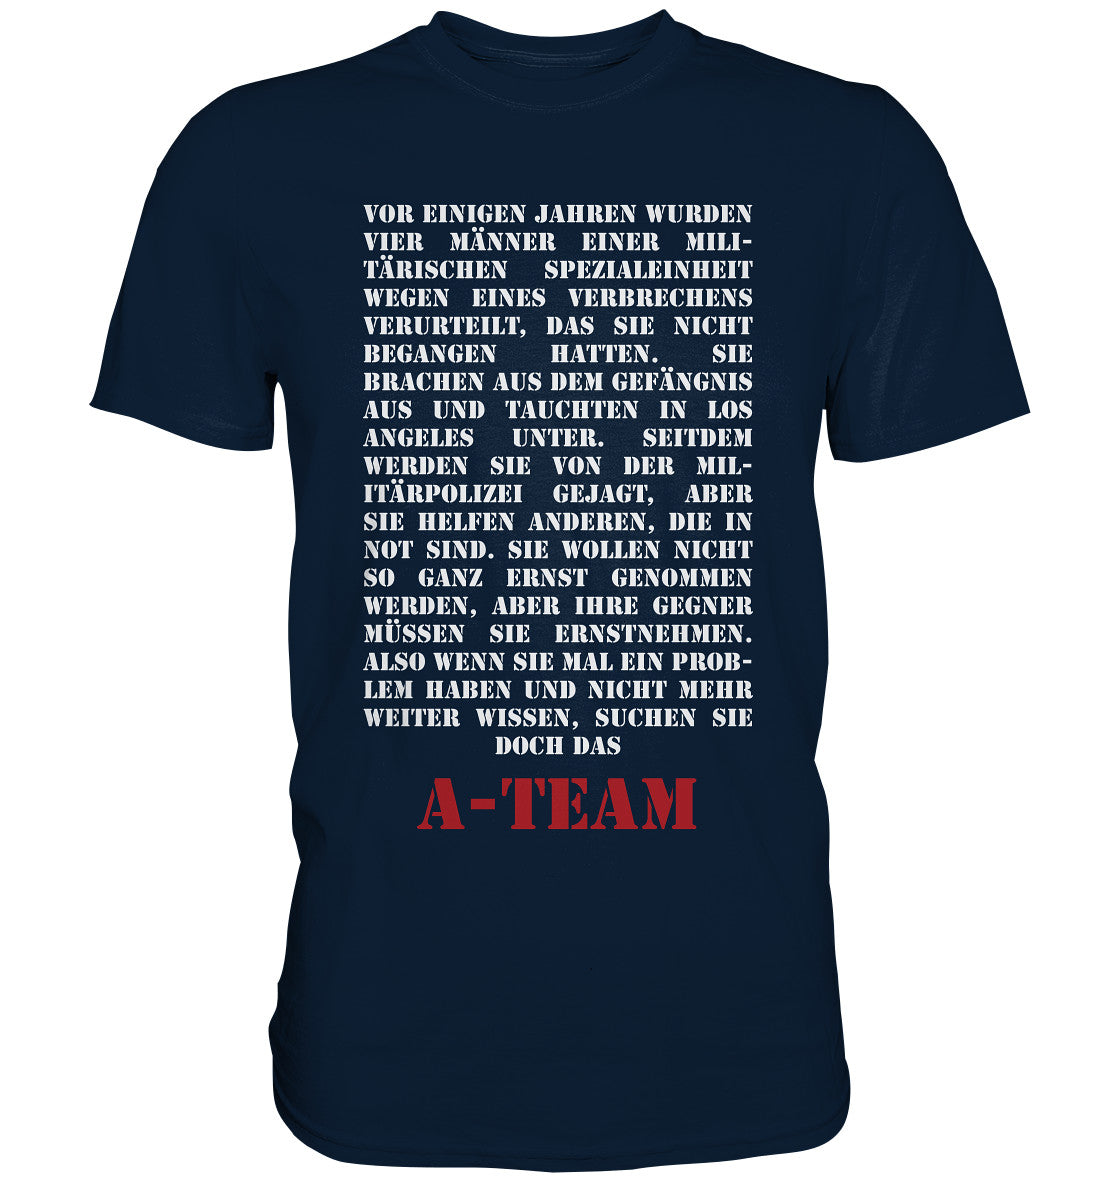 A-Team Theme - Premium Shirt